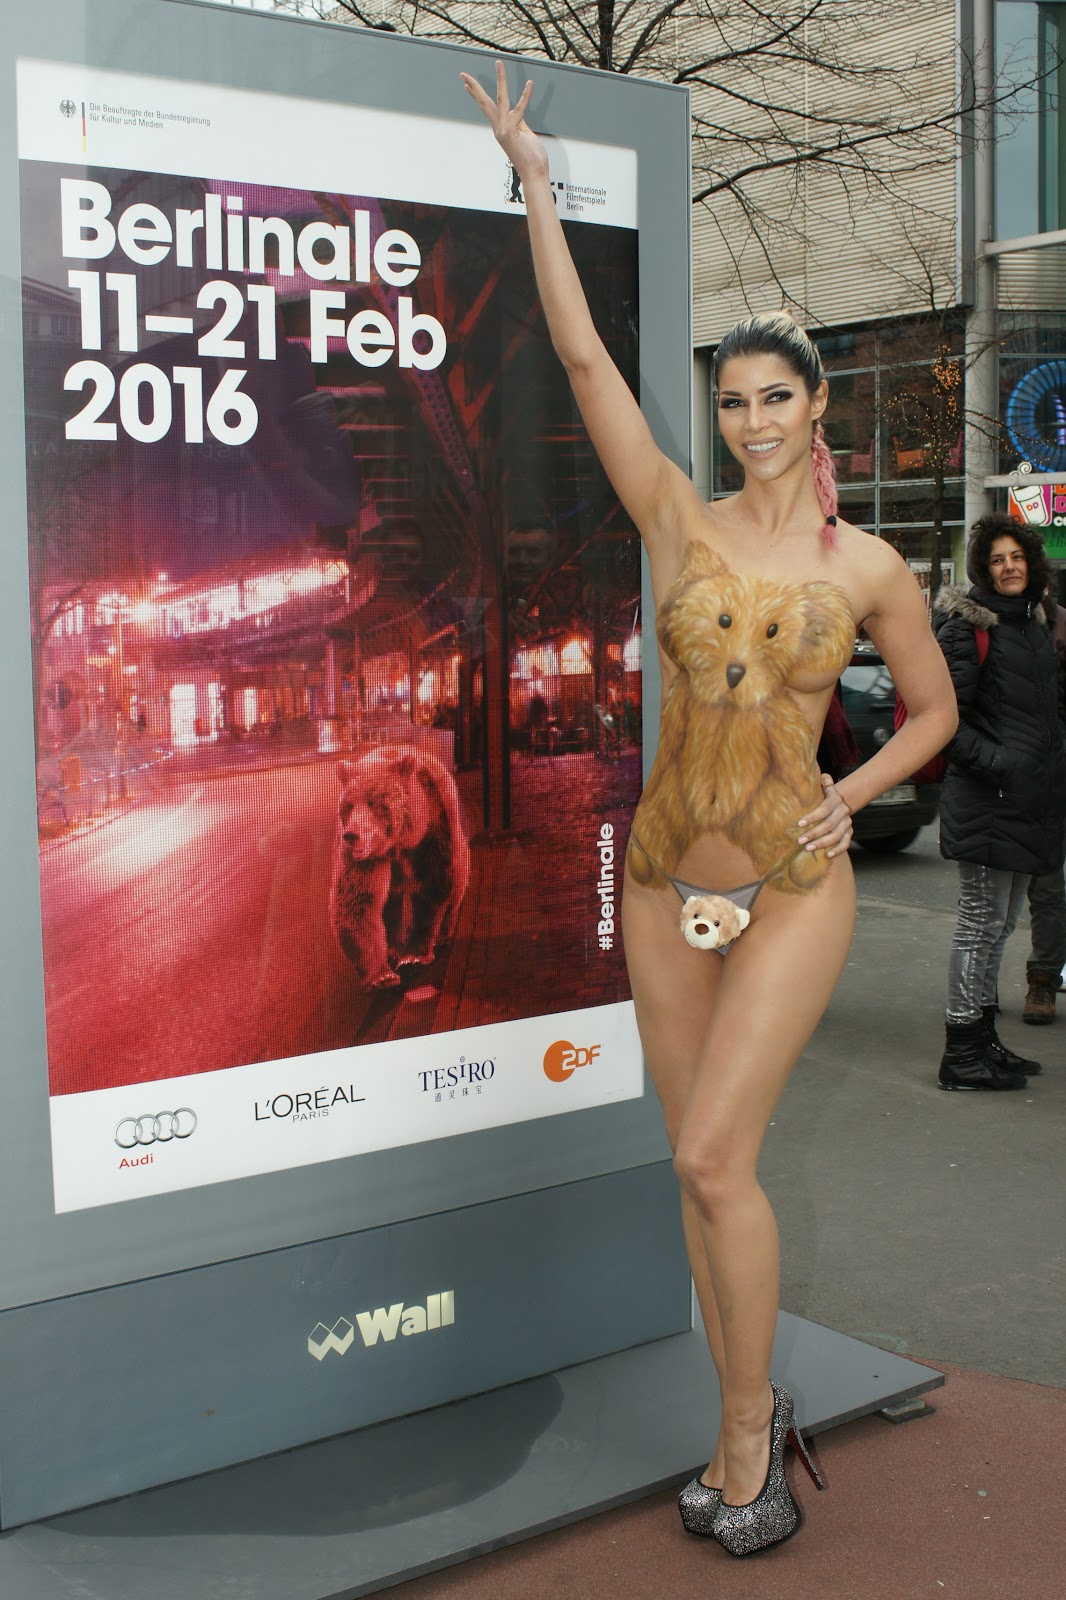 Micaela Schafer body paint in cuddly teddy bears for Berlinale 2016 in Berlin.